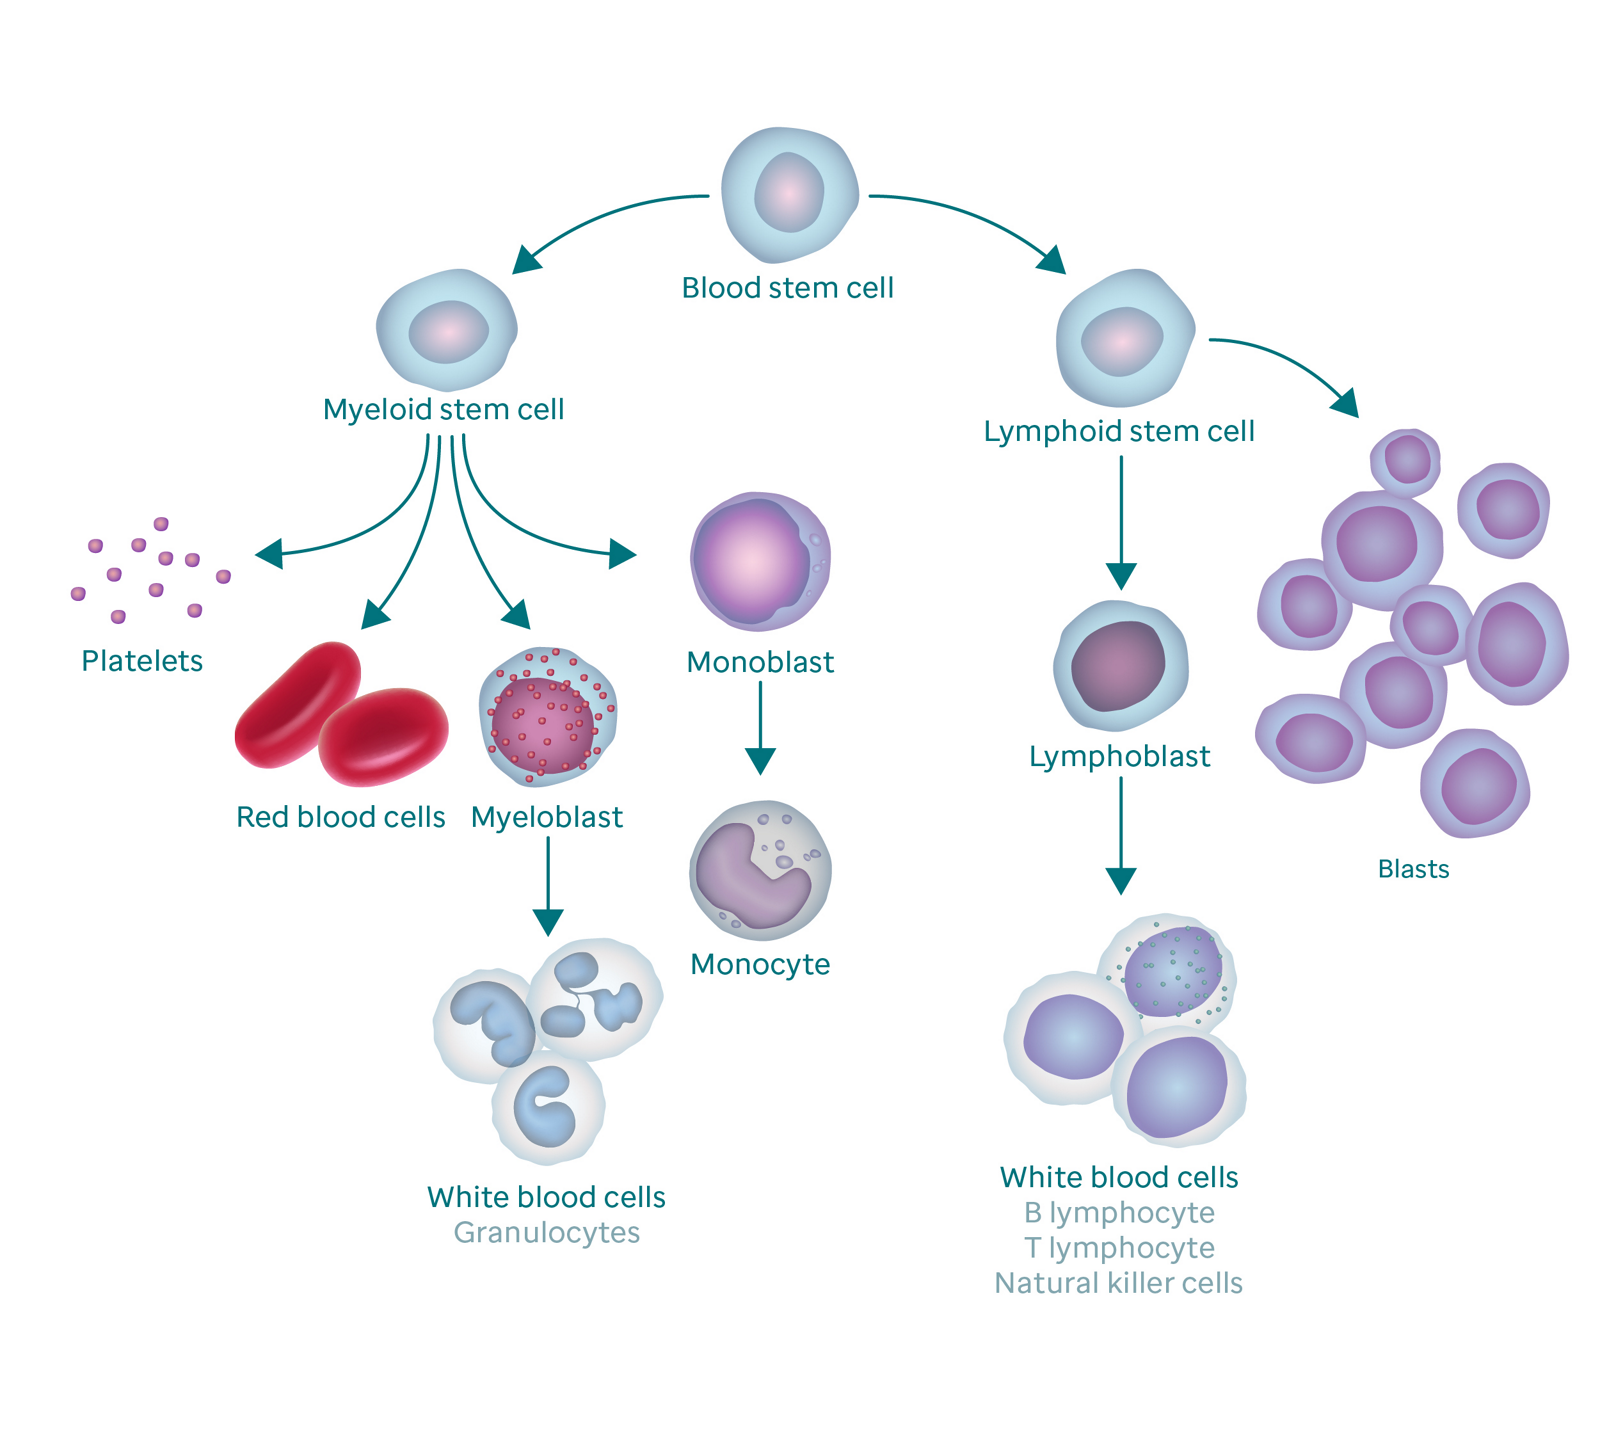 Grafik som visar blodbildningsprocessen och hur den resulterar i blastceller.  Grafiken börjar med en blodstamcell.  Till vänster förgrenar den sig till myeloid stamcell, som förgrenar sig till blodplättar, röda blodkroppar, myeloblast och monoblast.  Myeloblasten förvandlas till vita blodkroppar (även kallade granulocyter) och monoblasten förvandlas till en monocyt.  Den högra grenen av blodstamceller går till lymfoid stamcell, som förgrenar sig till lymfoblaster (som förändras till vita blodkroppar) och blastceller.